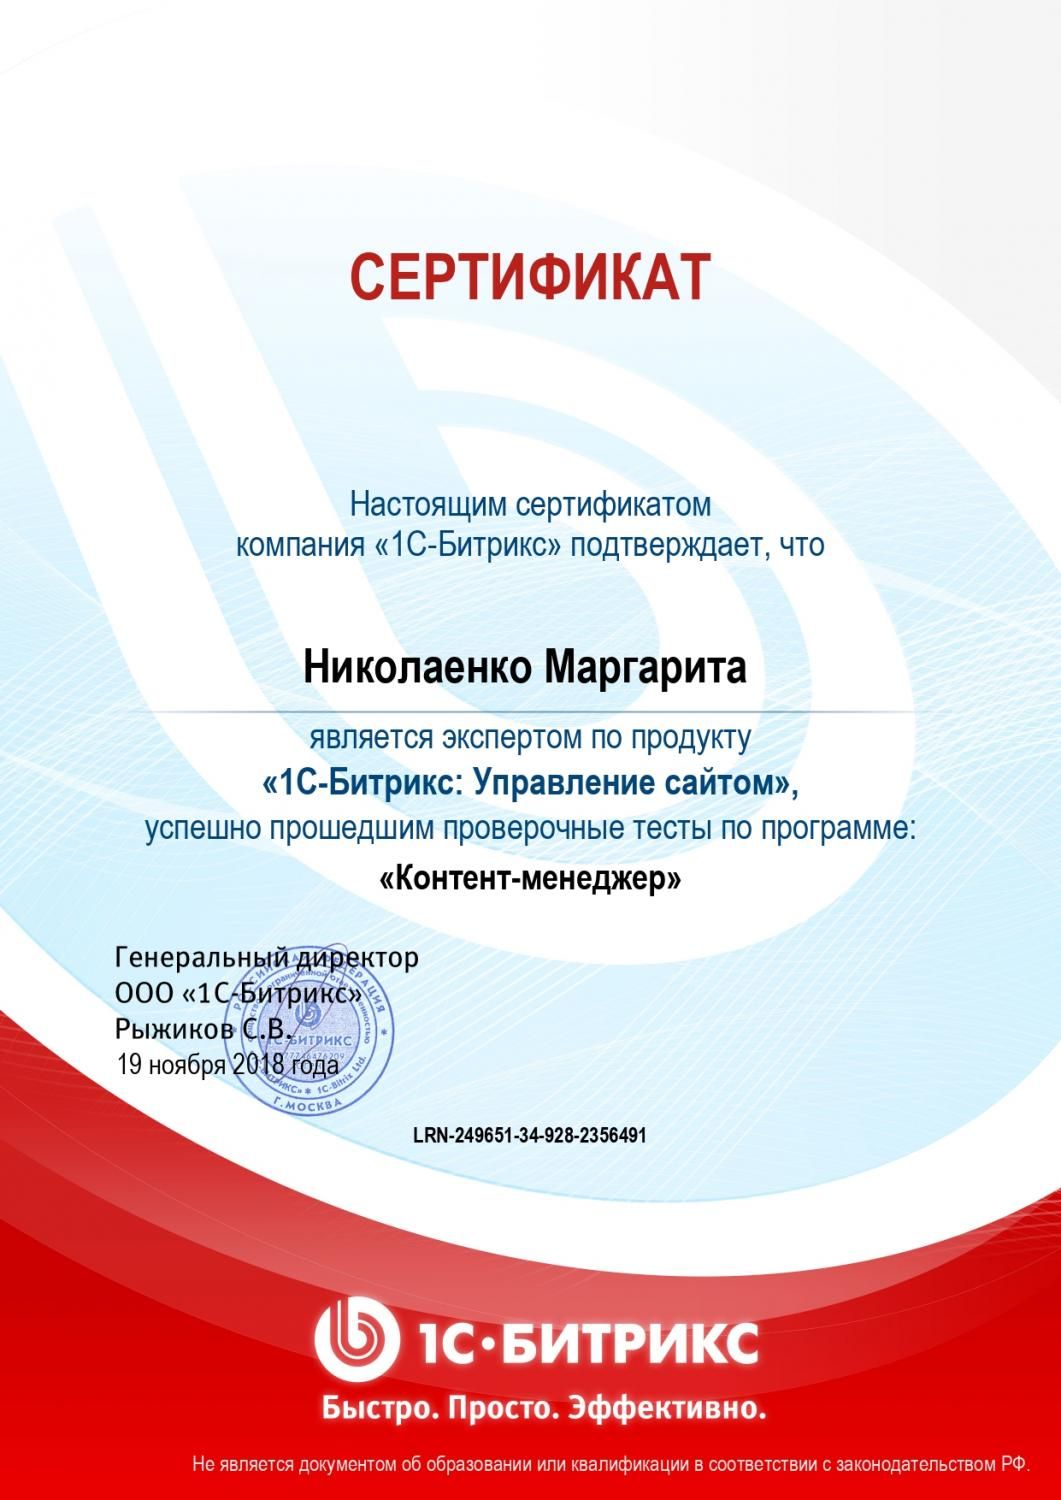 Сертификат эксперта по программе "Контент-менеджер" - Николаенко М. в Черкесска